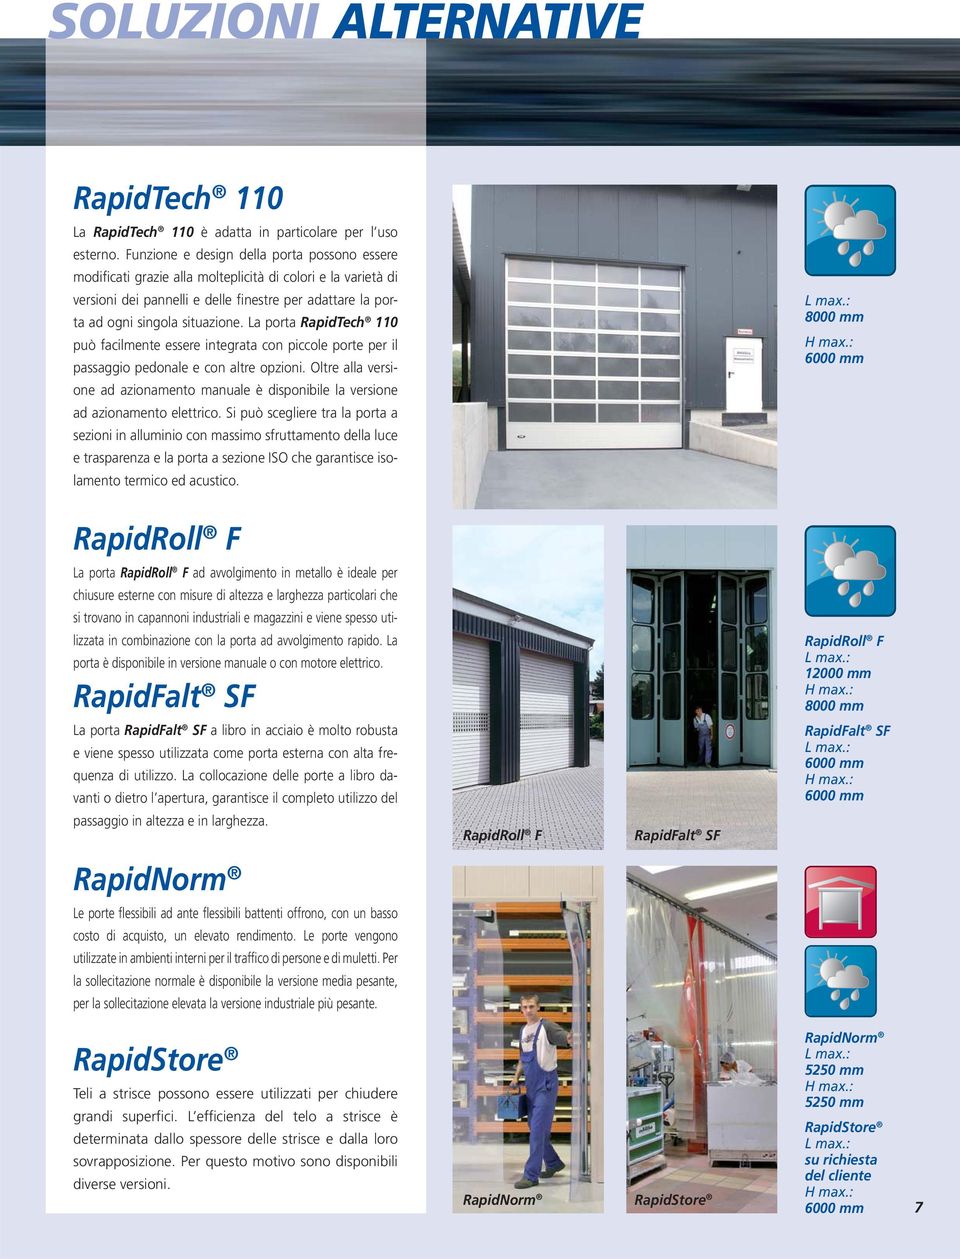 La porta RapidTech 110 può facilmente essere integrata con piccole porte per il passaggio pedonale e con altre opzioni.